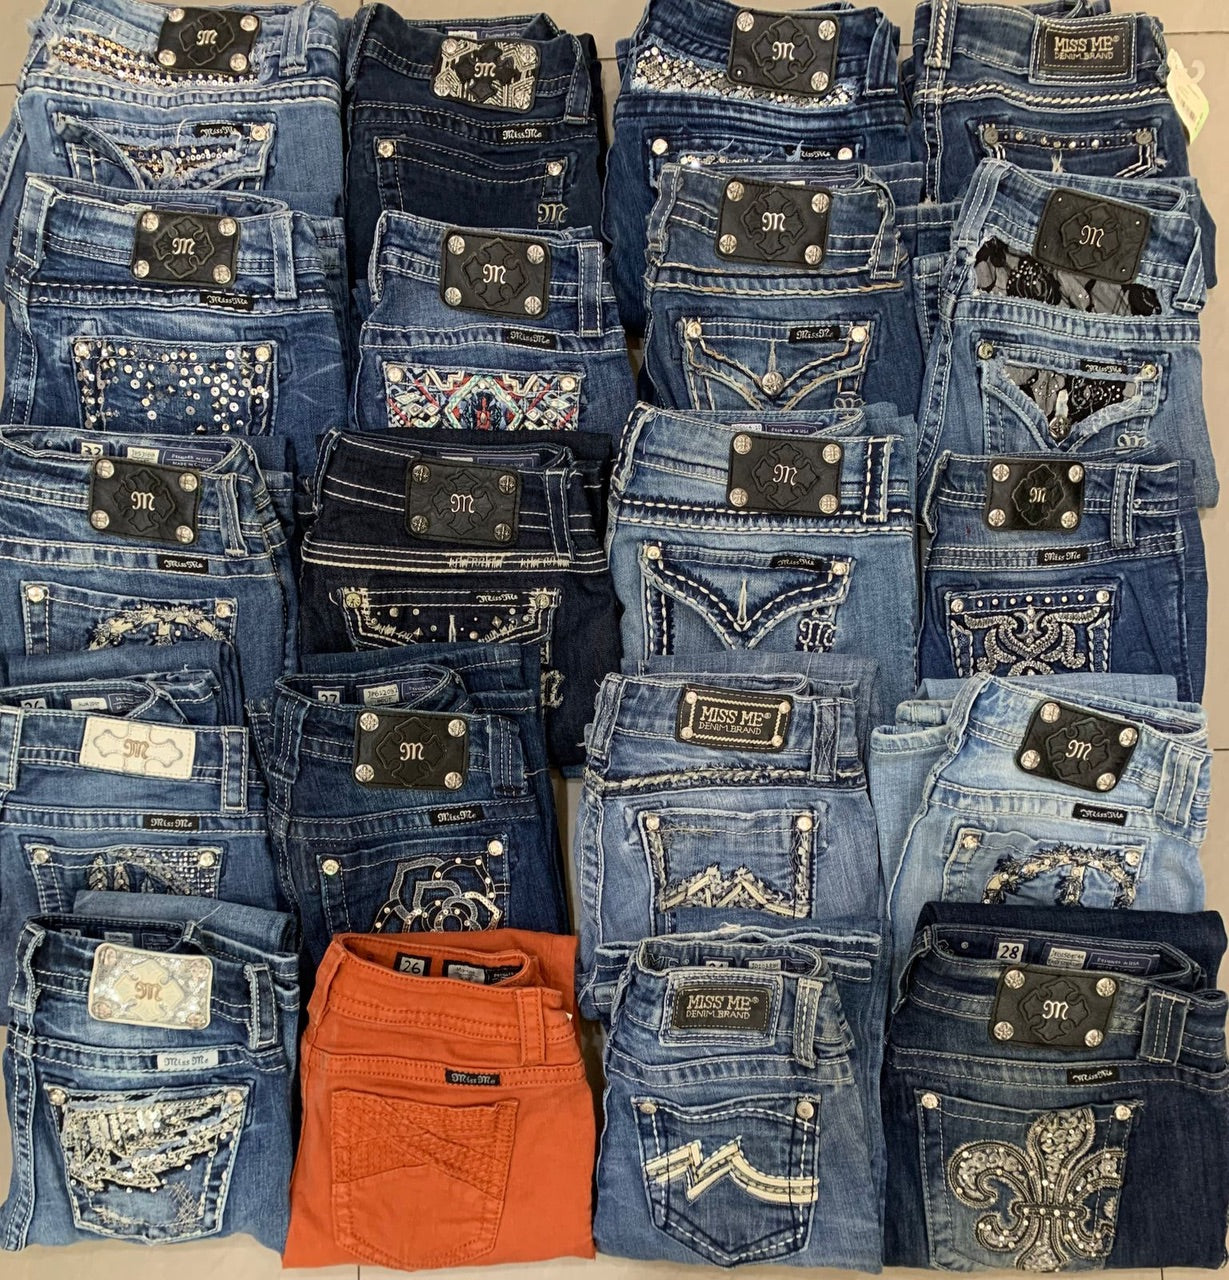 Miss Me / Rock Revival Jeans - 100 pieces, Vintage Wholesale Marketplace